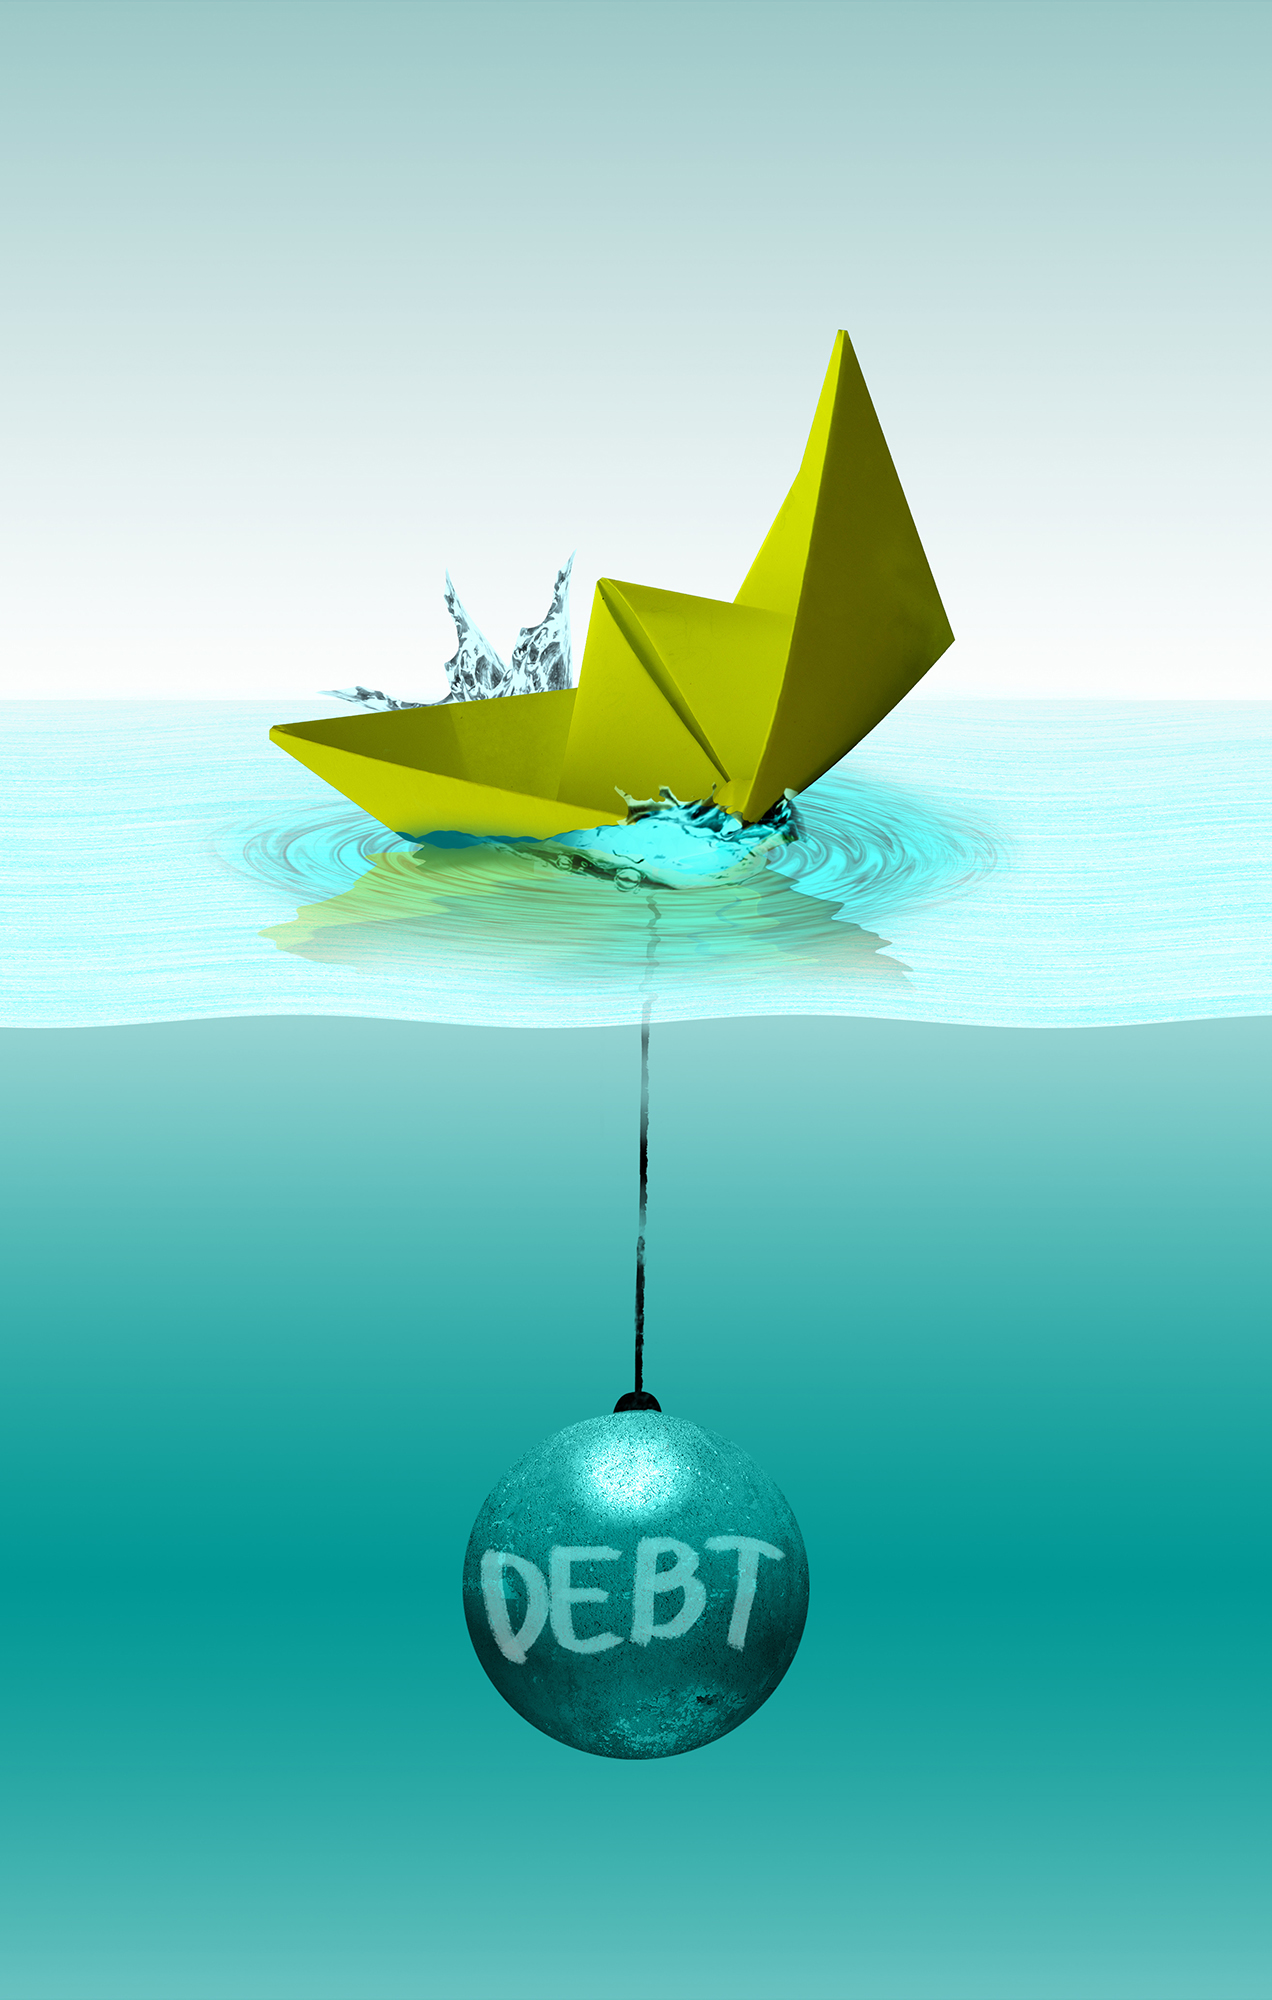 Drown in debt